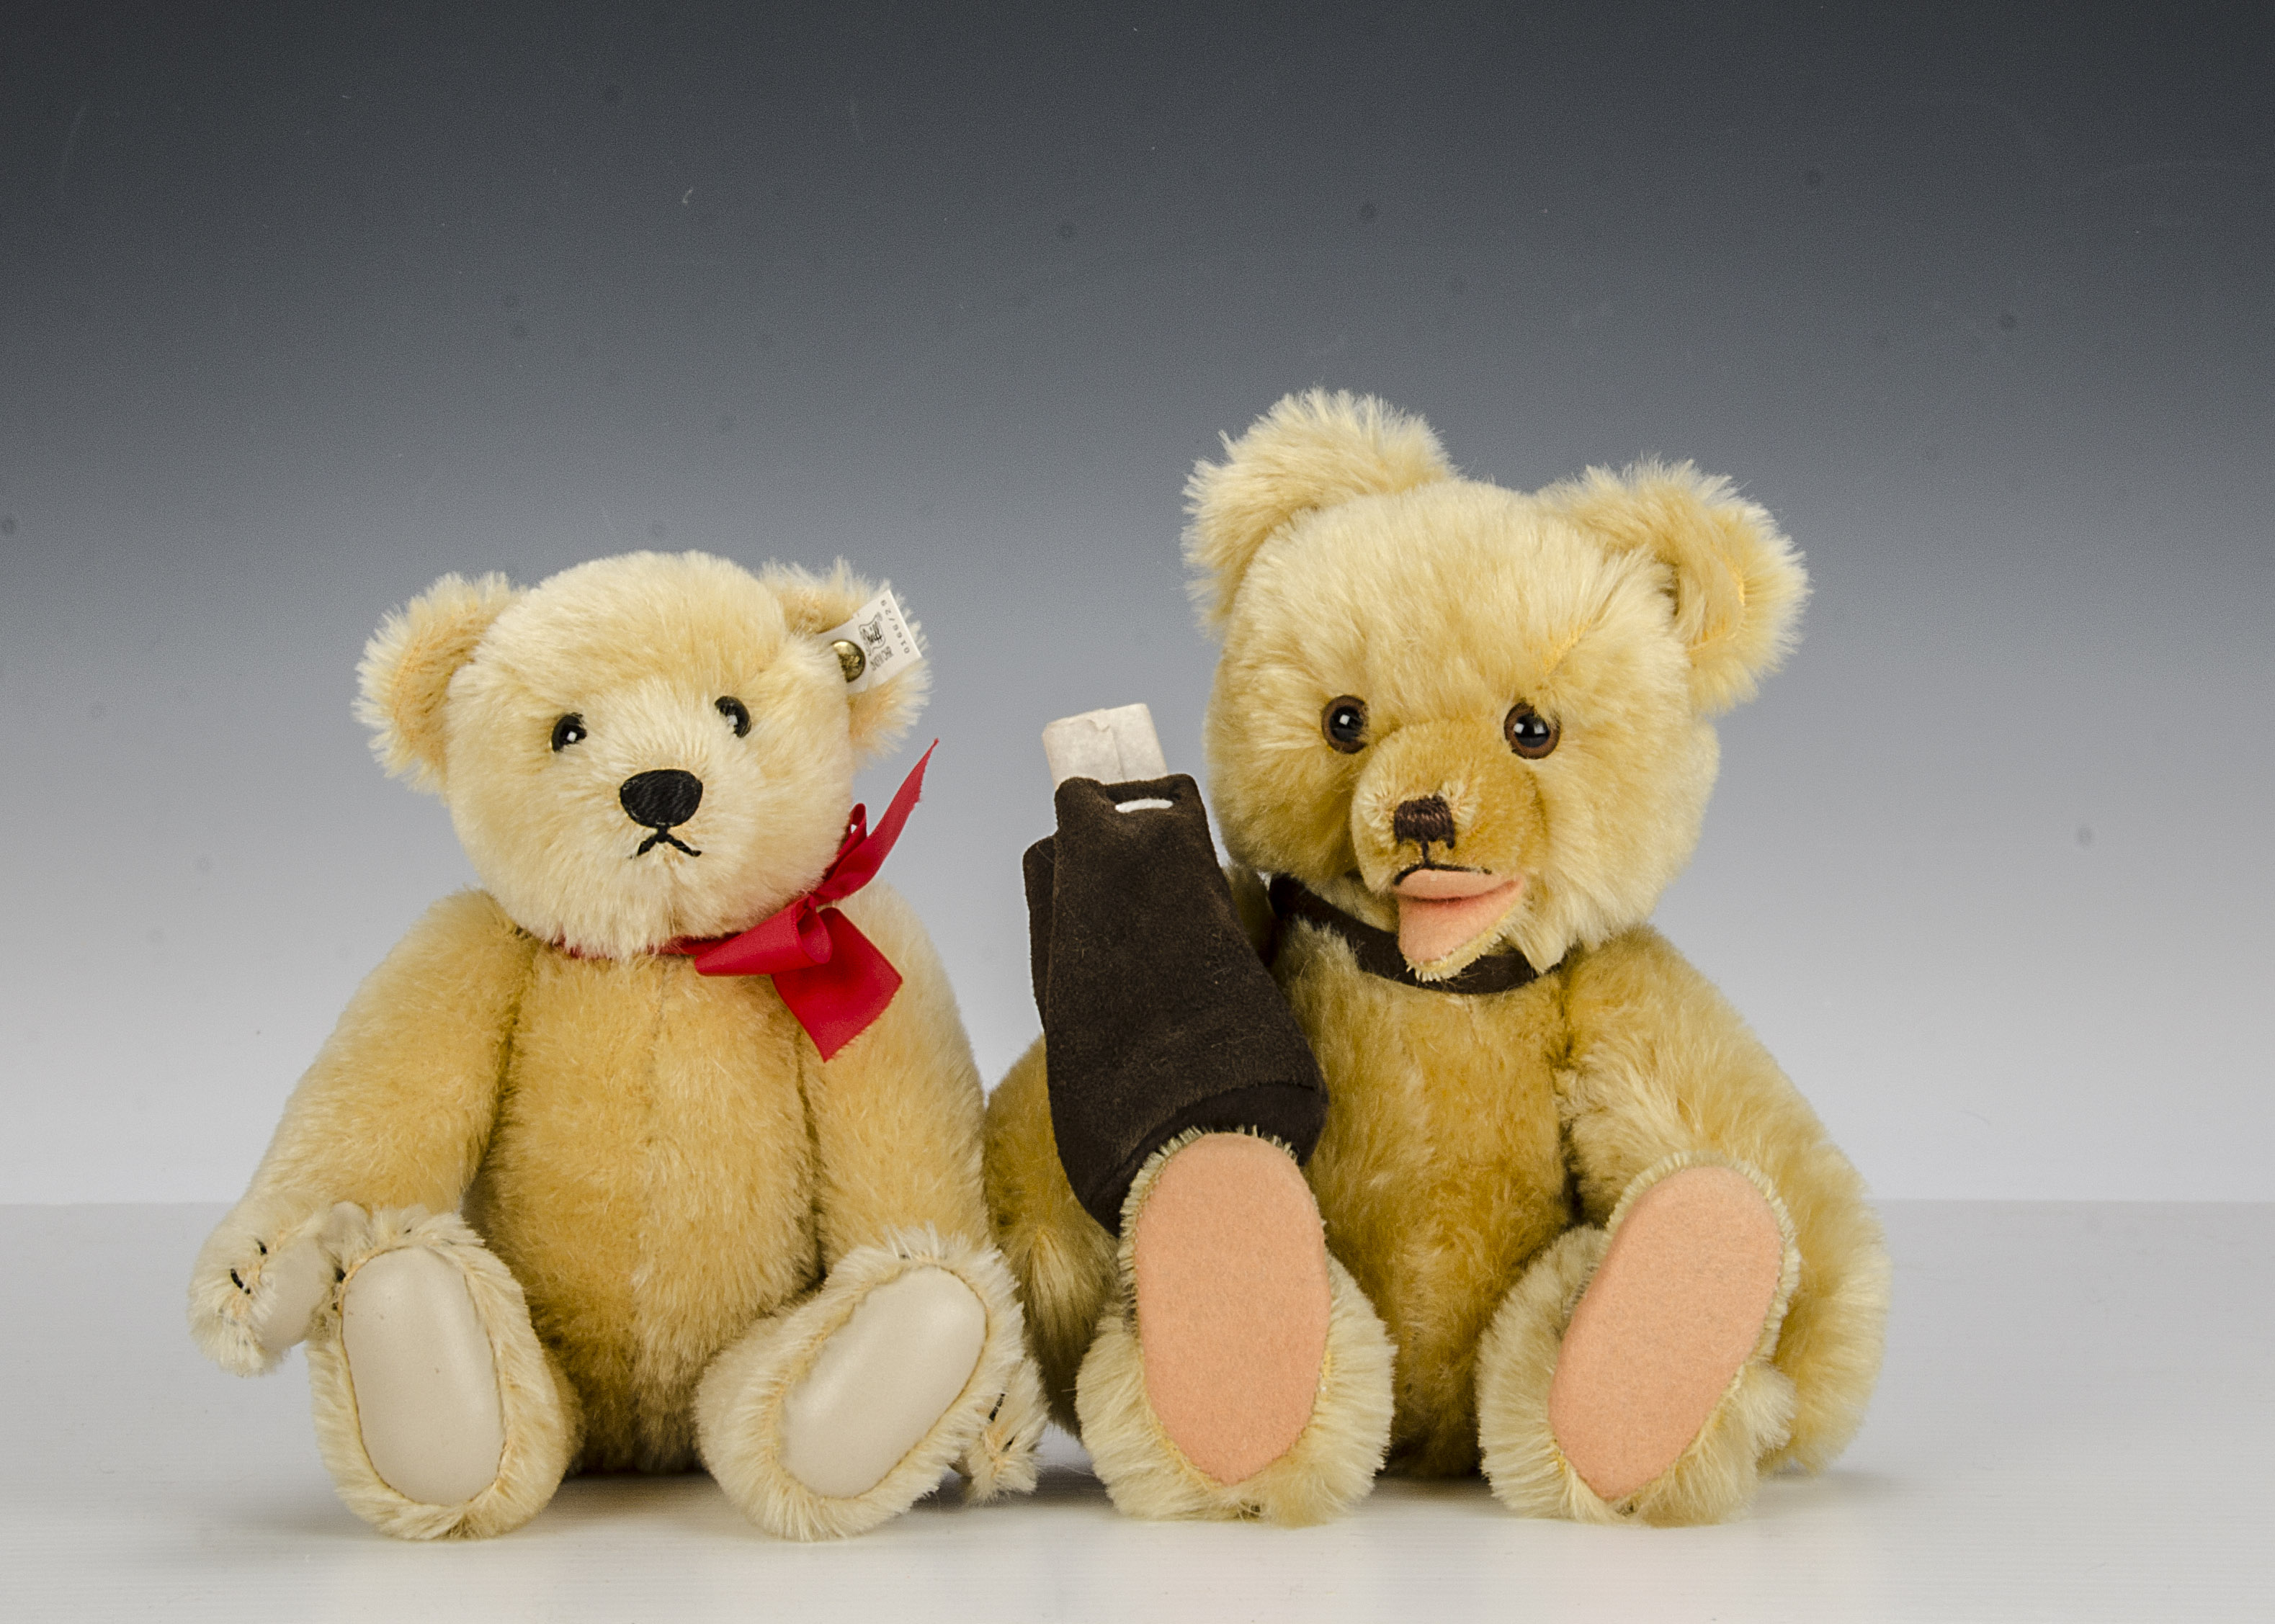 Stratford-upon-Avon Teddy Bear Museum Teddy Bears: a Steiff William Shakespeare Bear with